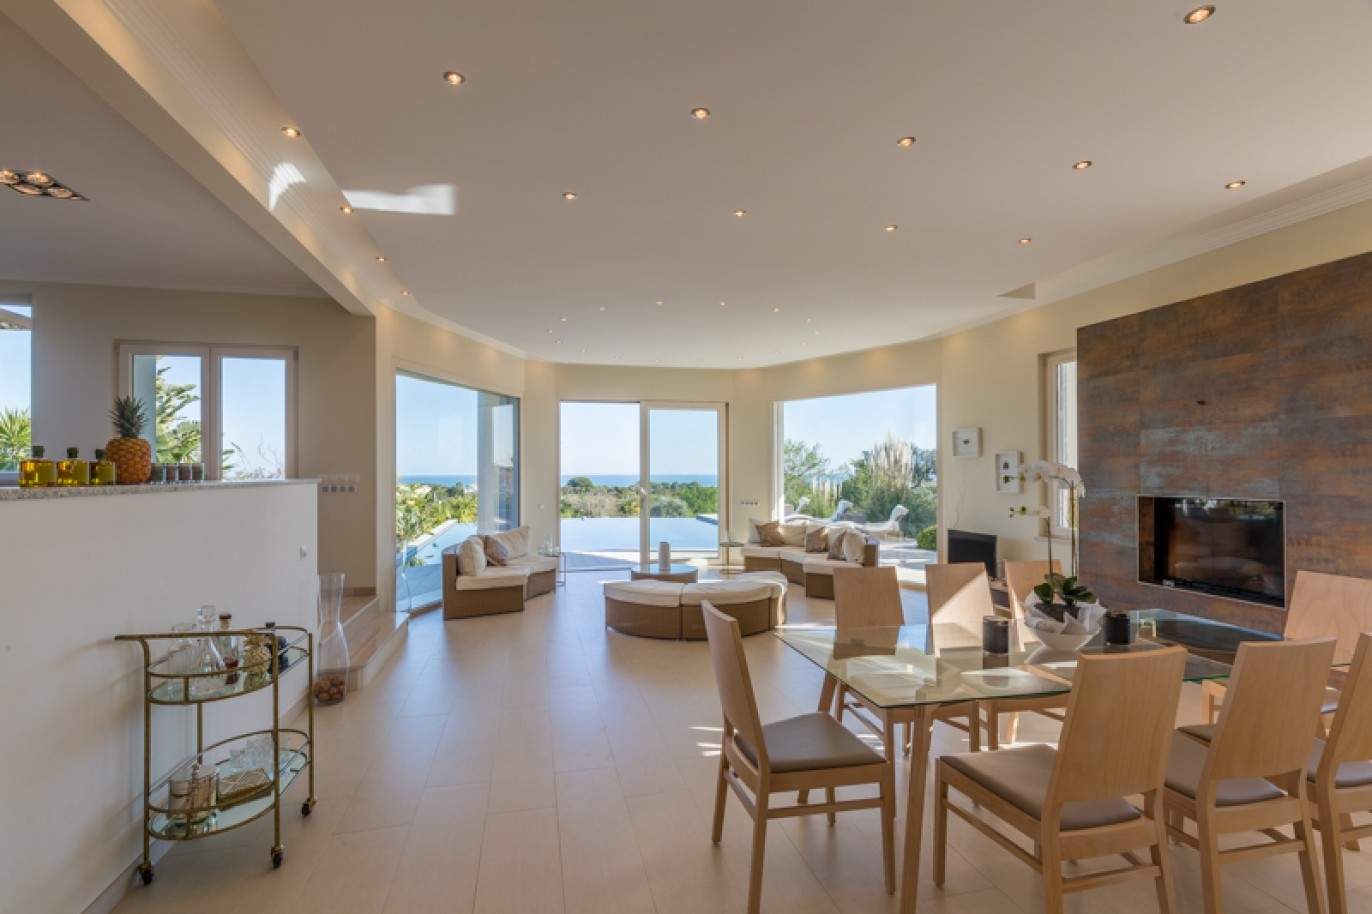 Freistehende villa zum Verkauf mit Meerblick, in der Nähe von Strand und golf, Carvoeiro, Algarve, Portugal_76416